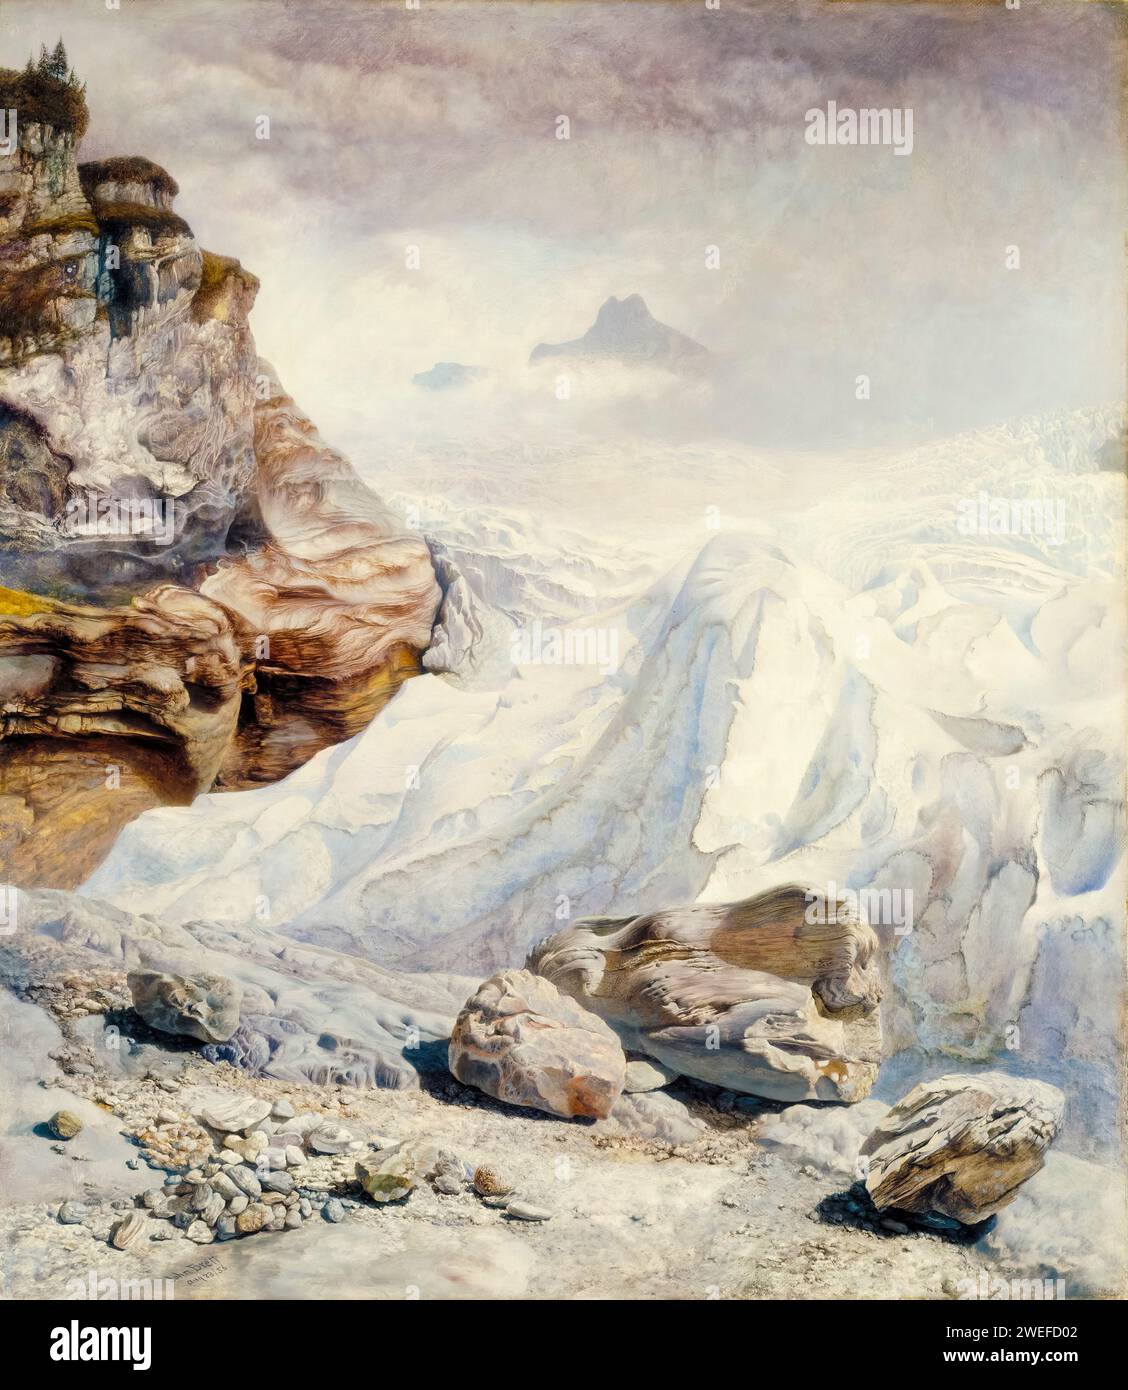 John Brett, Glacier de Rosenlaui, peinture de paysage à l'huile sur toile, 1856 Banque D'Images